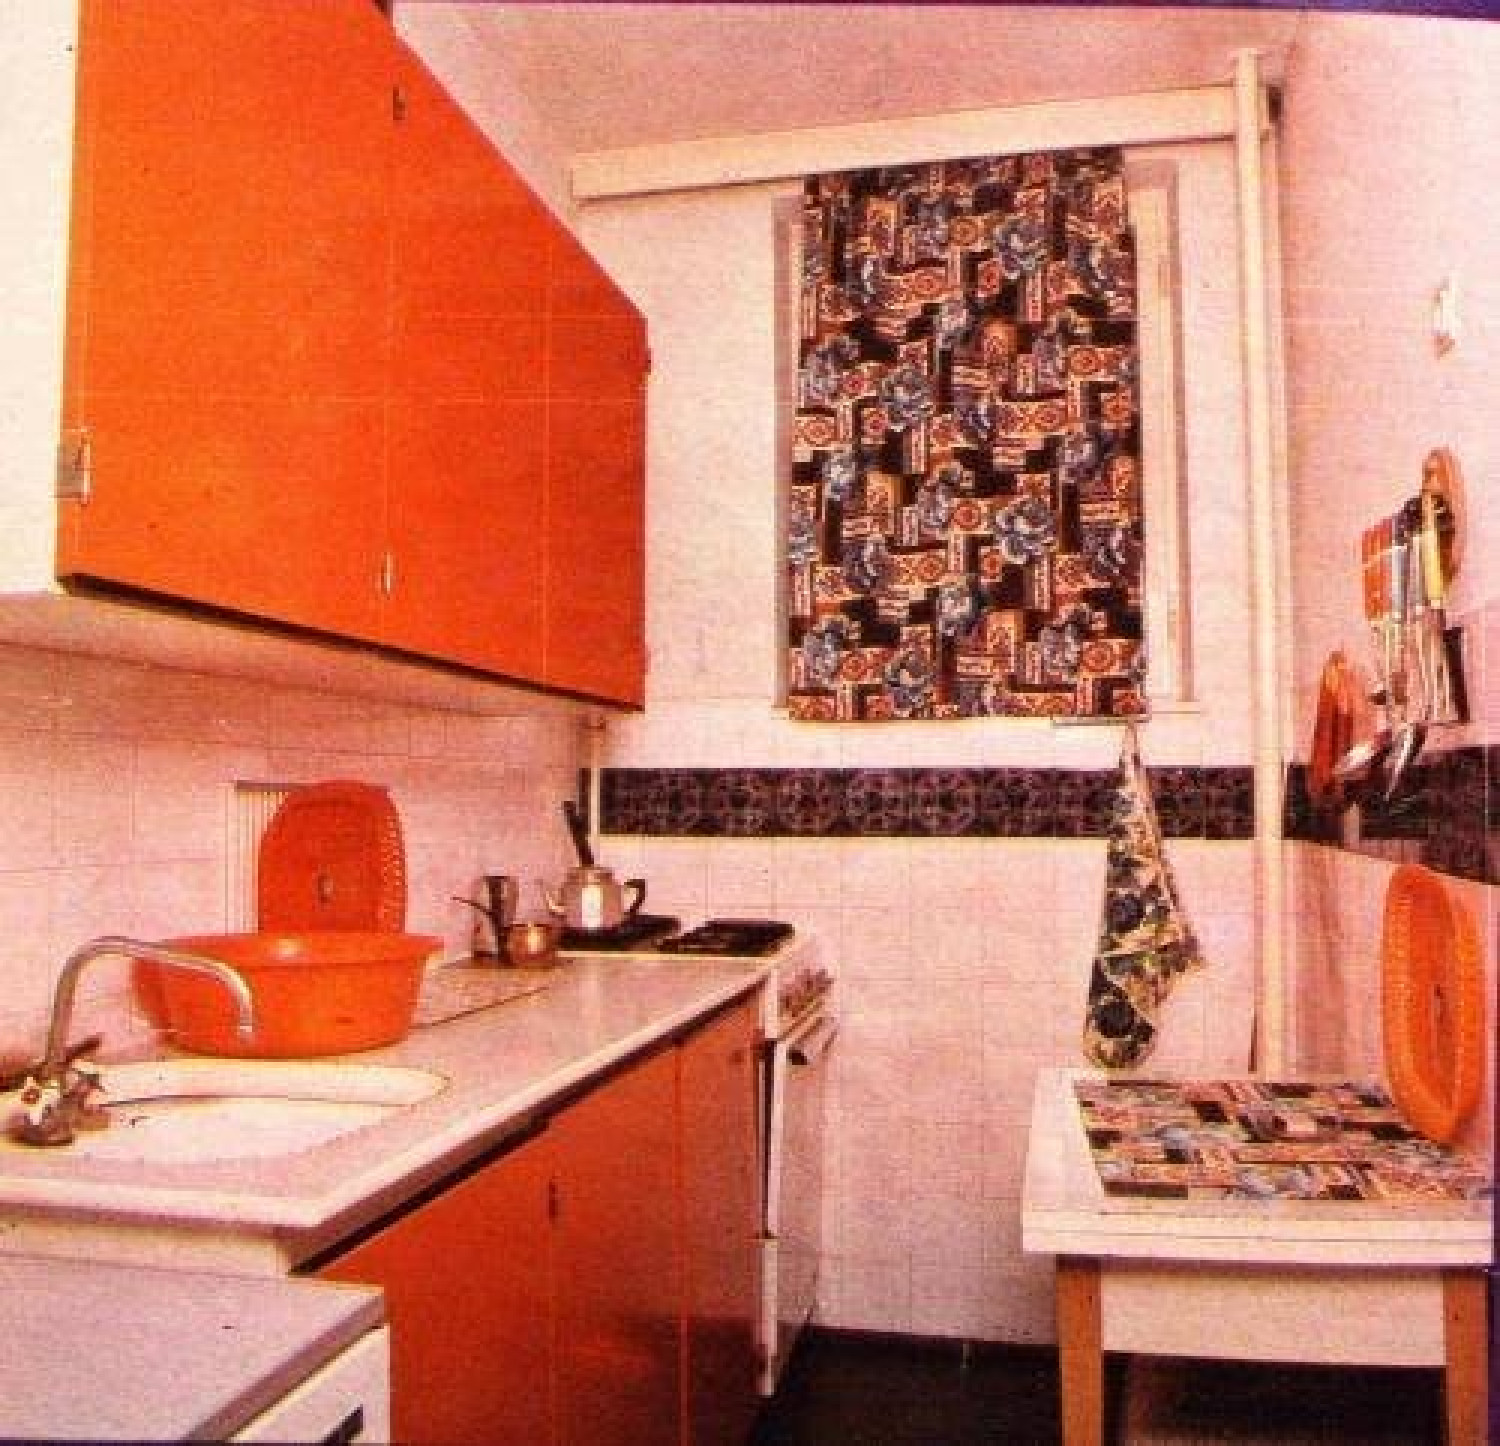 Ilyen volt a konyhánk a 70-es 80-as években. Ismerős?